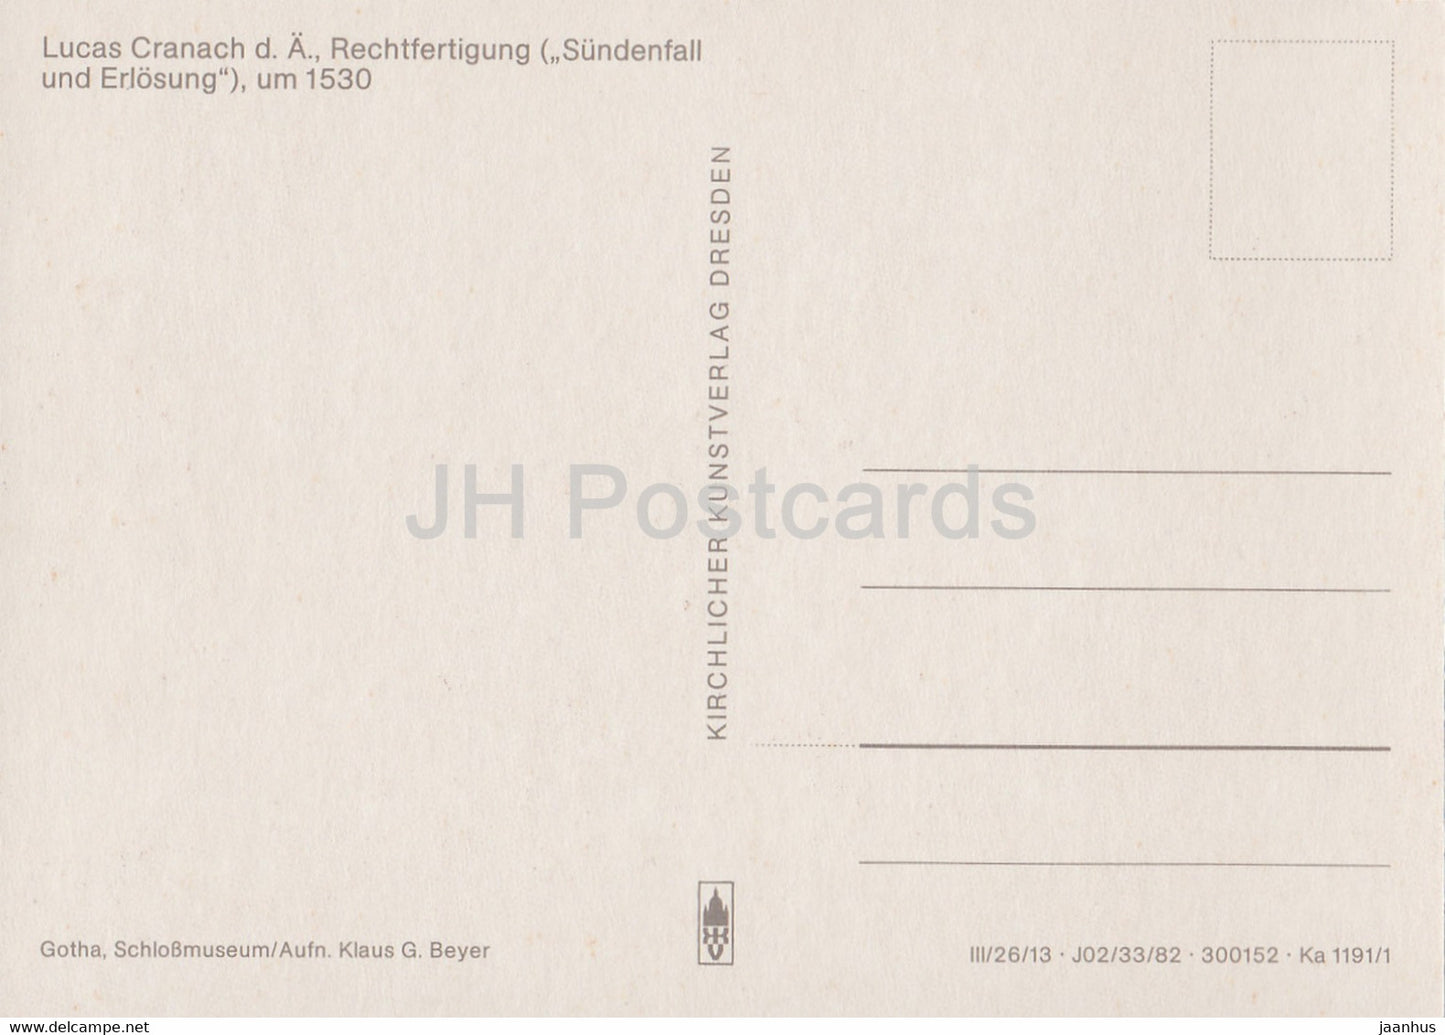 Gemälde von Lucas Cranach dem Älteren - Rechtfertigung - Rechtfertigung - Deutsche Kunst - Deutschland - unbenutzt